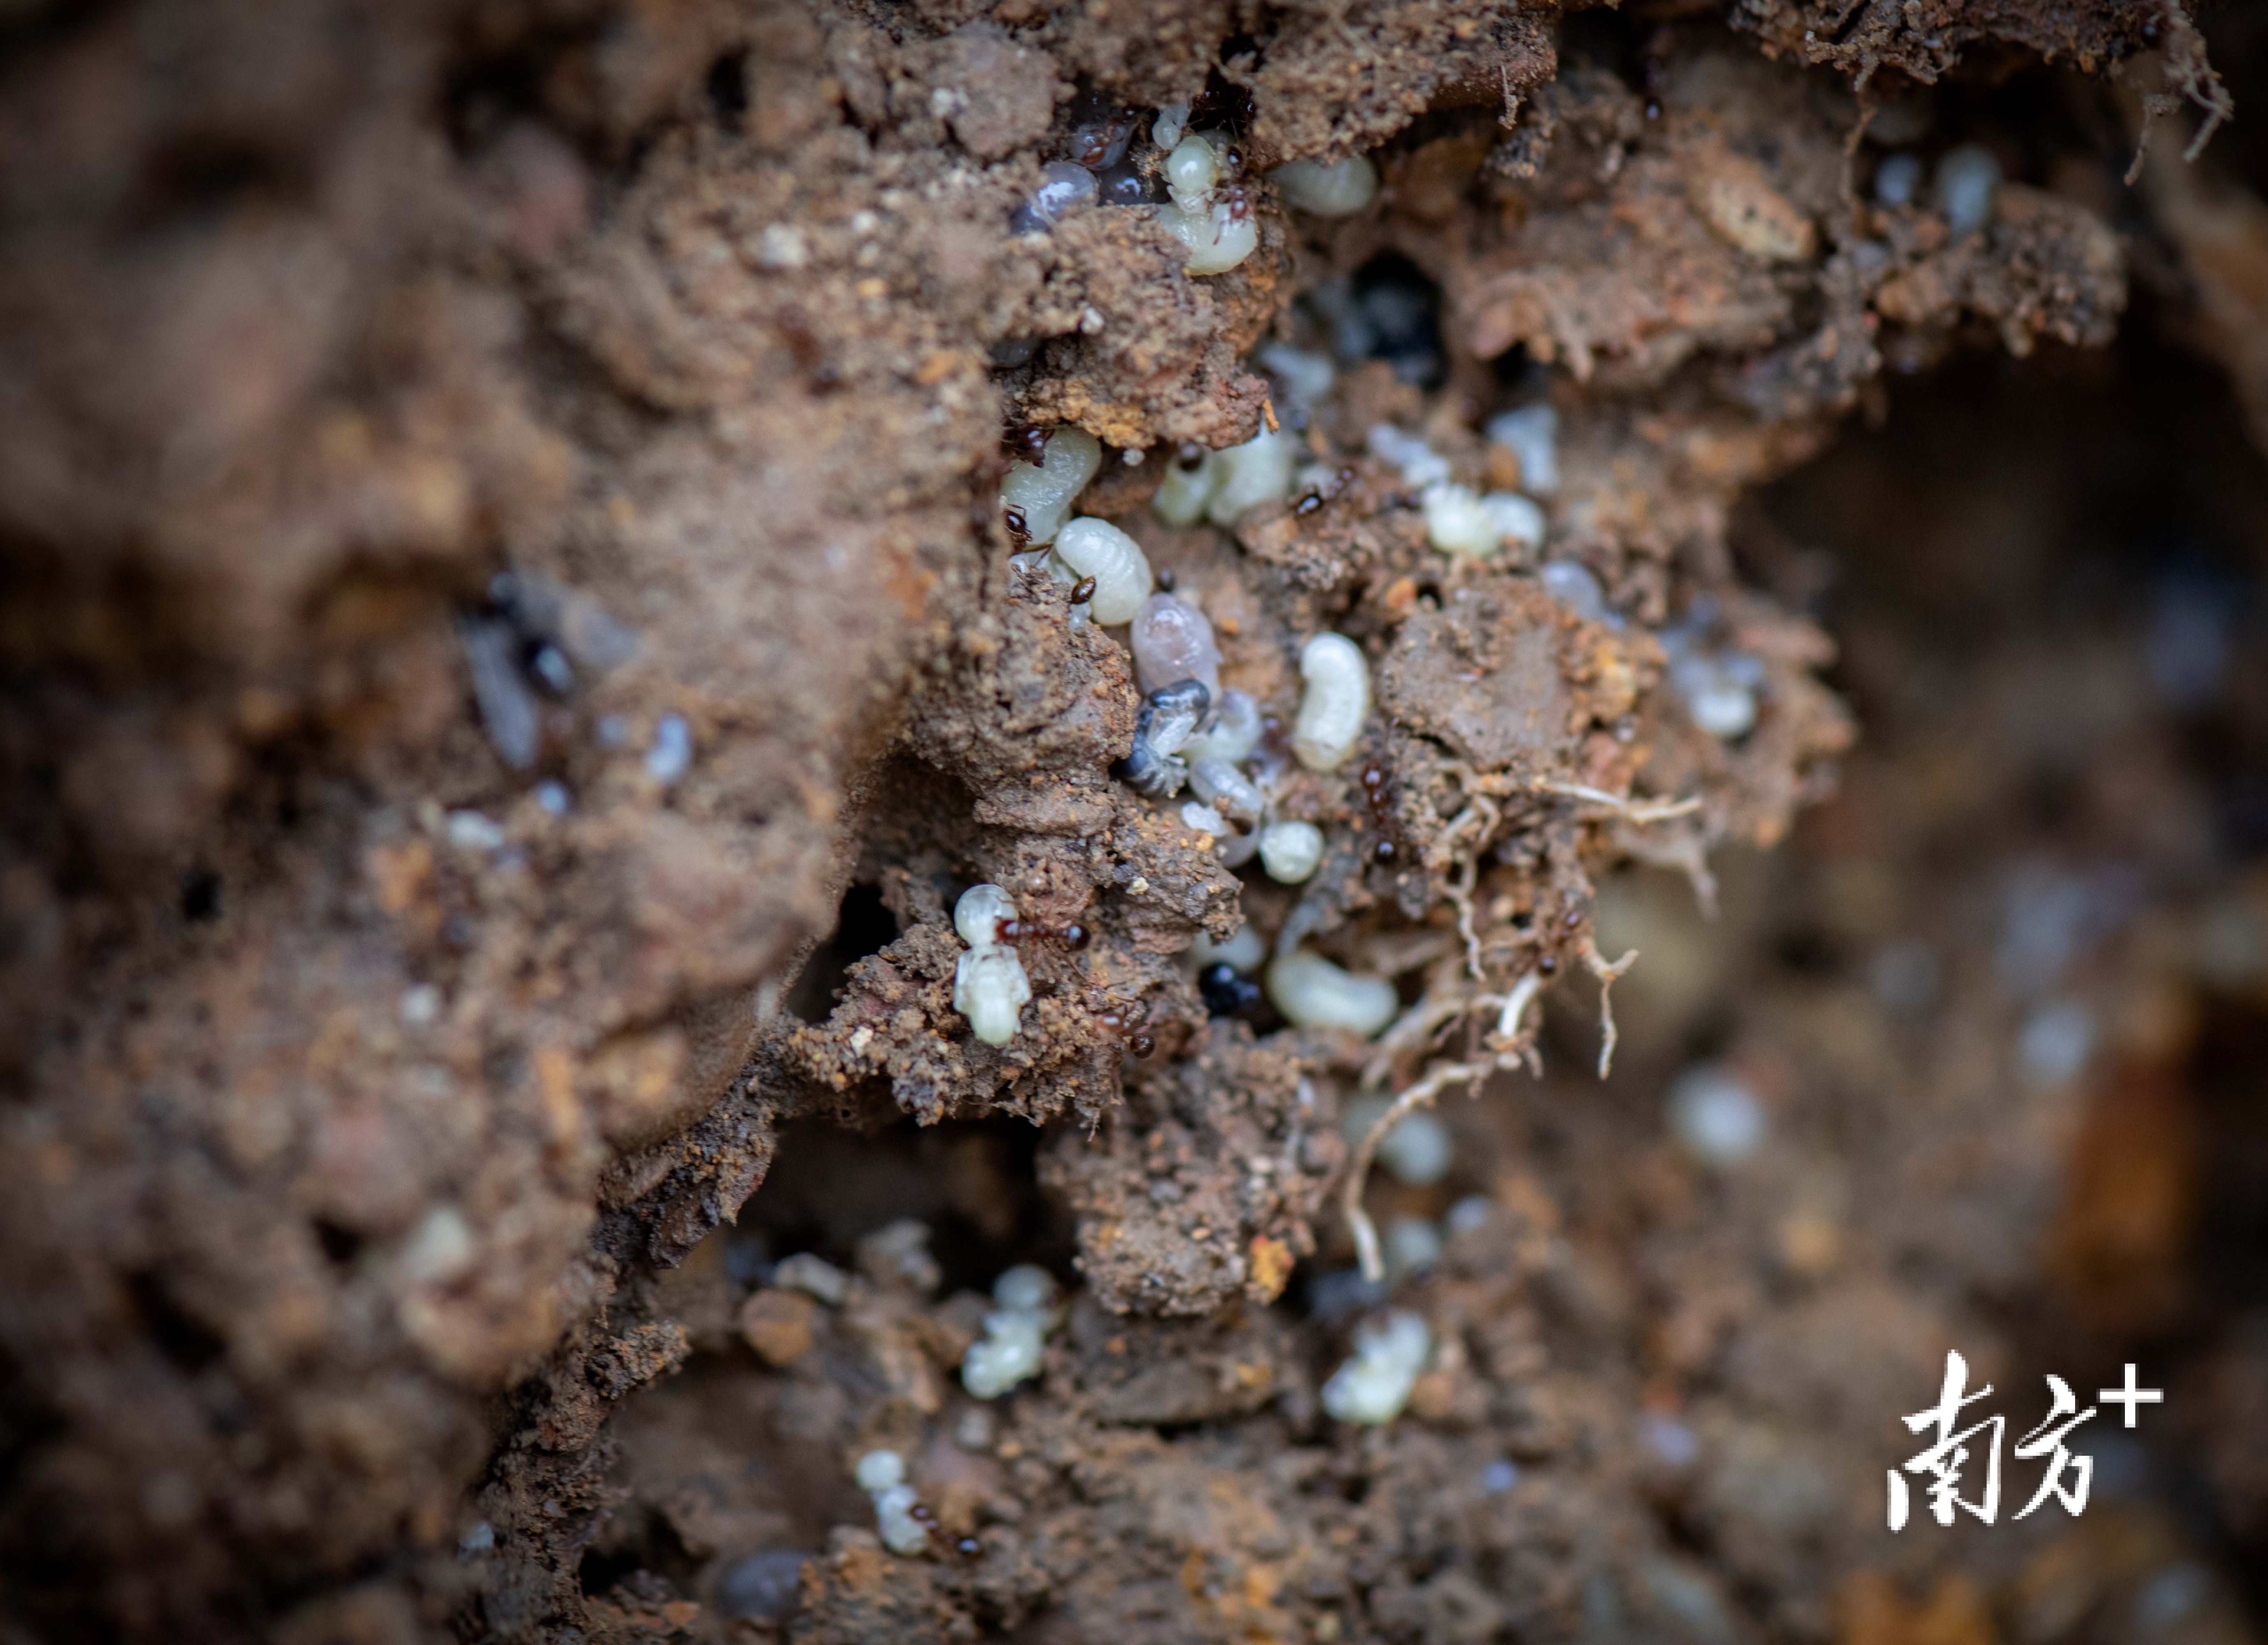 蚁巢深处密密麻麻白色的蚁卵。